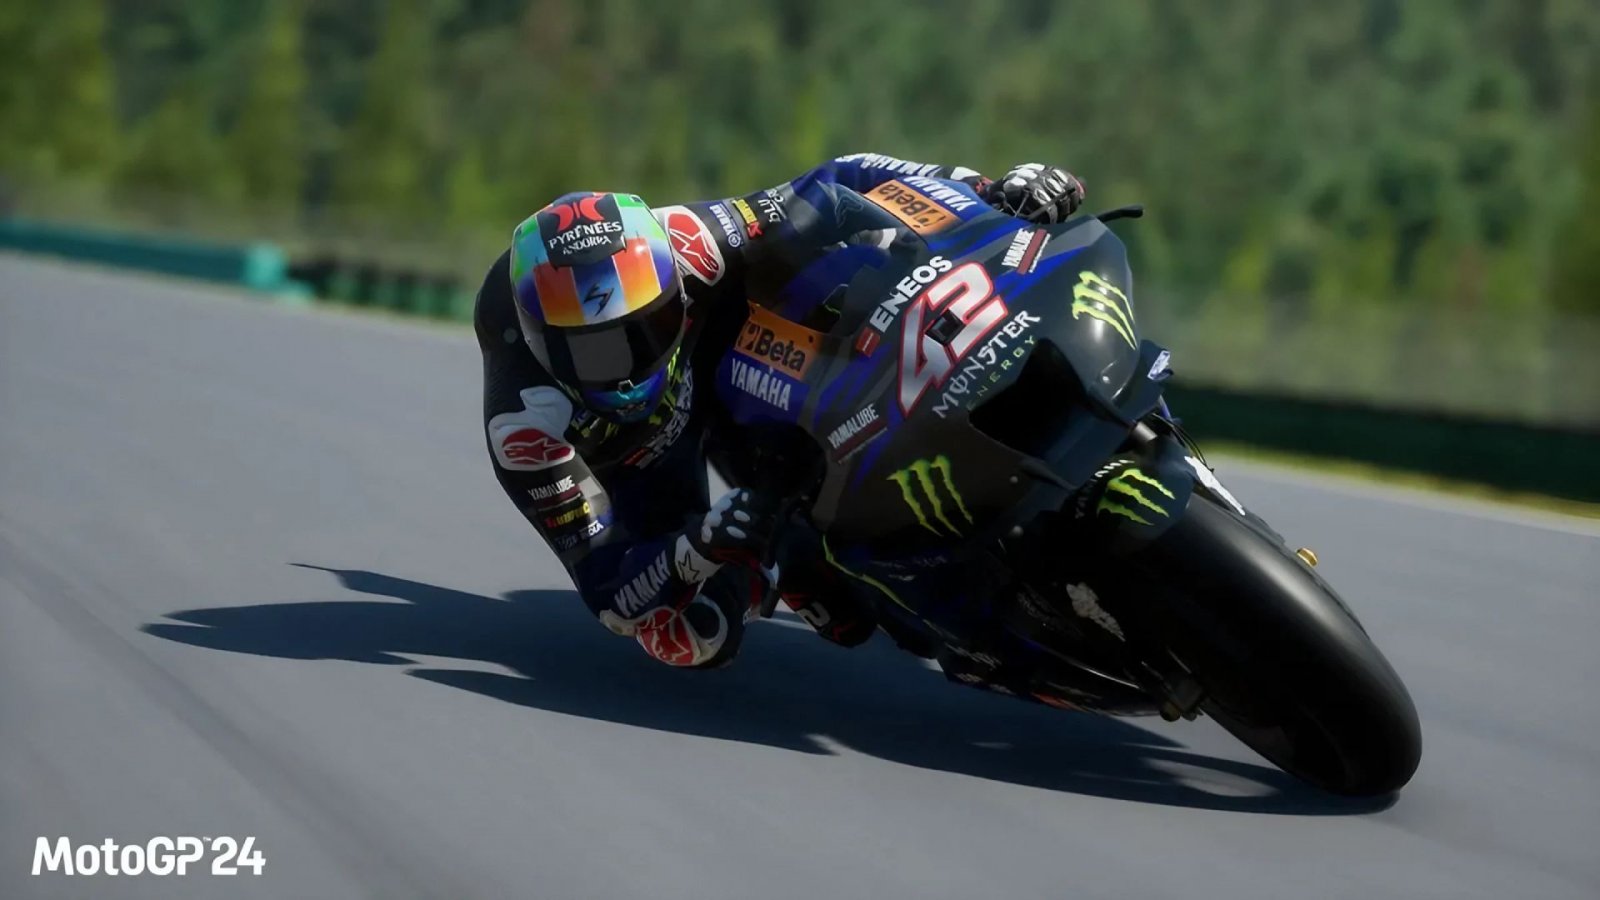 MotoGP 24 è stato annunciato con un trailer e la data di uscita su PC e console